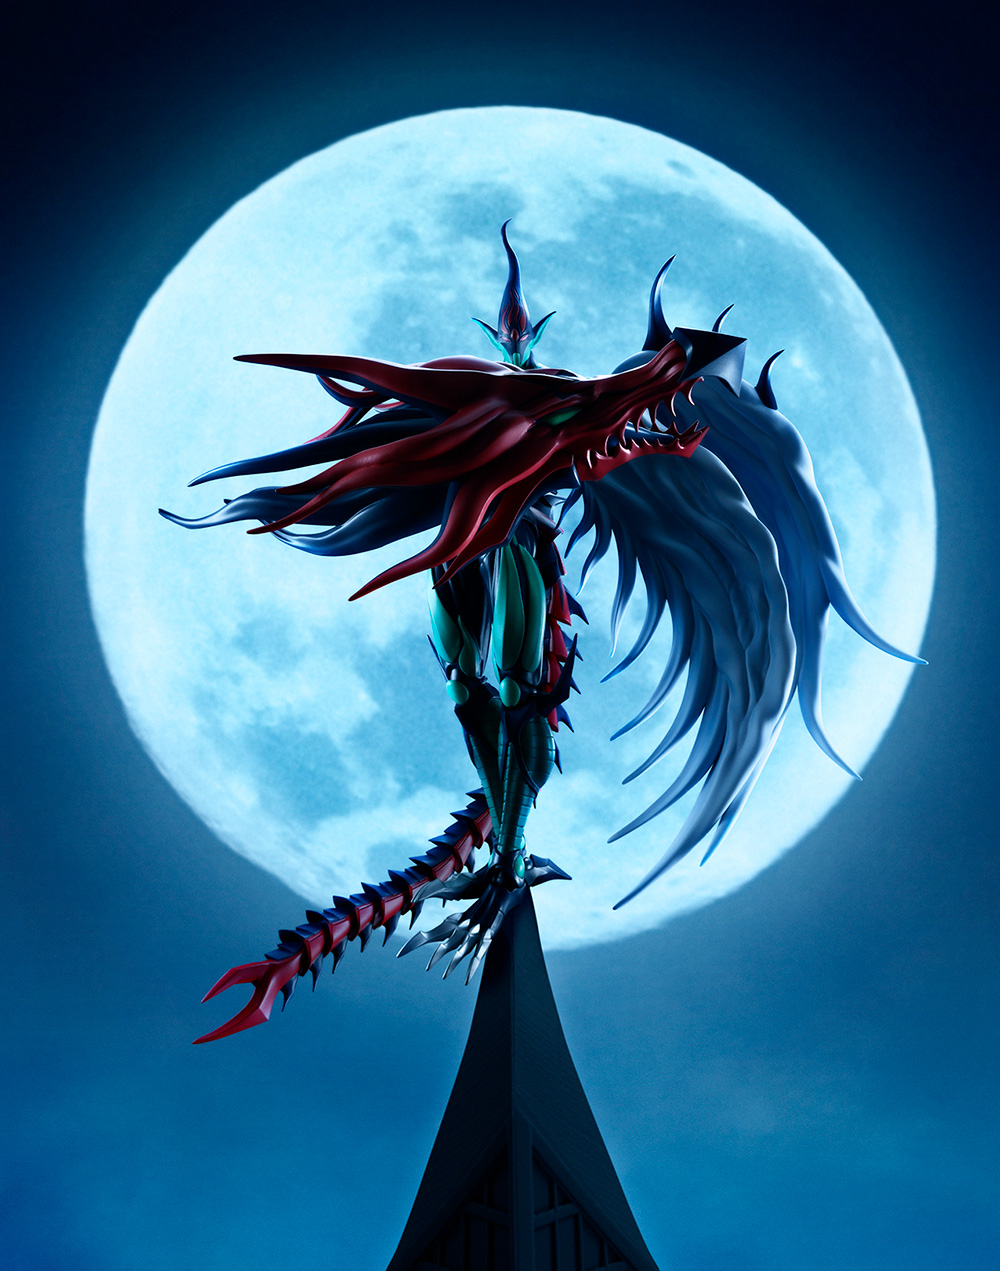 遊戲王—怪獸之決鬥GX 圖S.H.MonsterArts E・Hero Flame Wingman